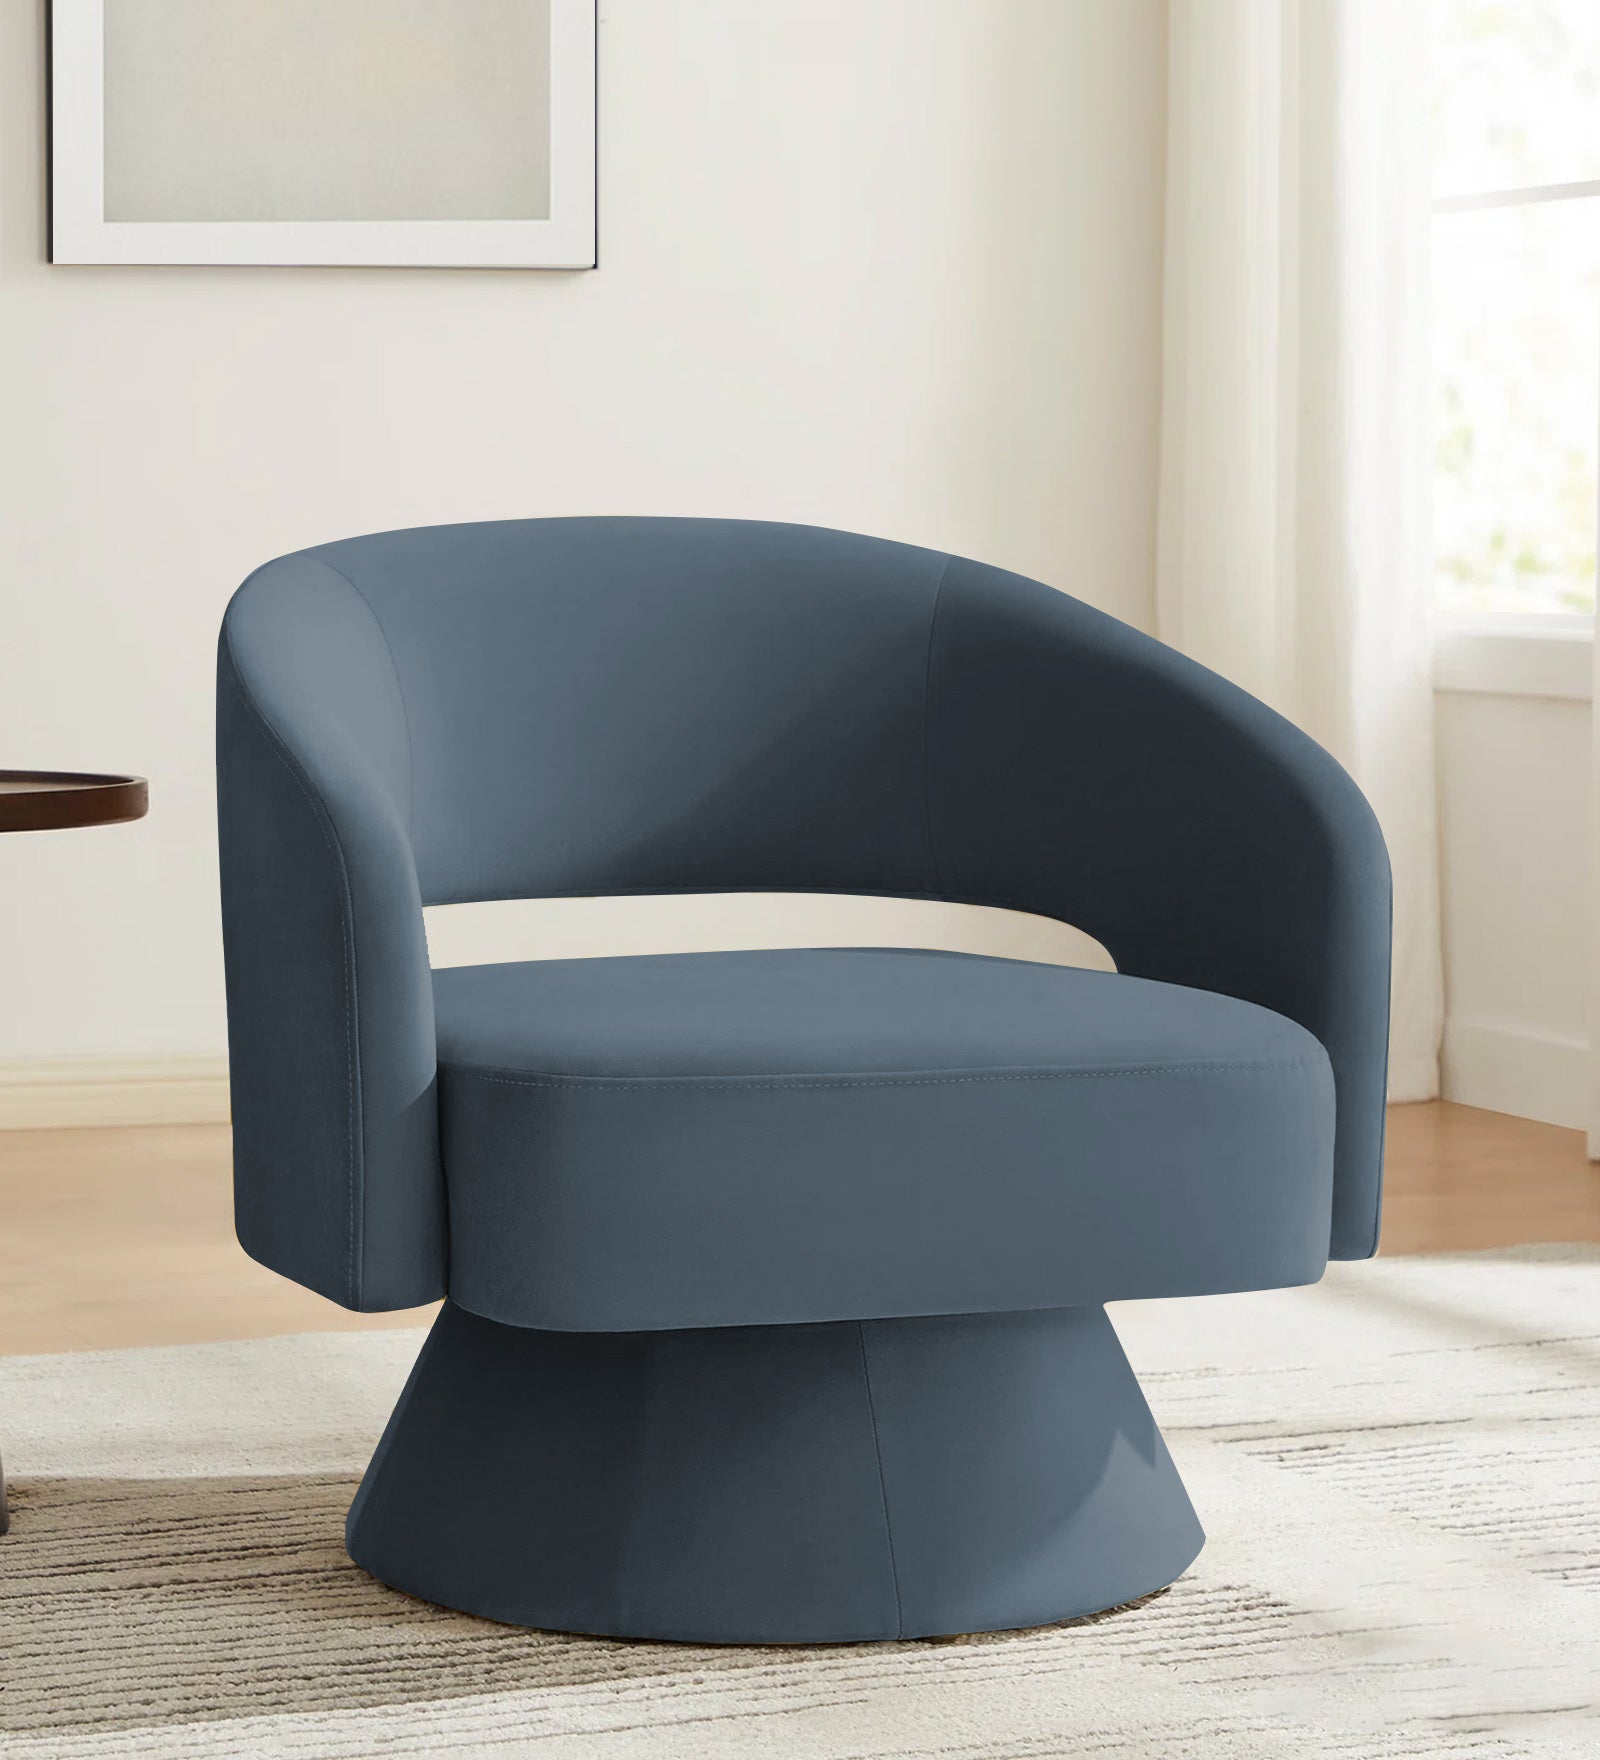 Pendra Velvet Swivel Chair in Oxford Blue Colour